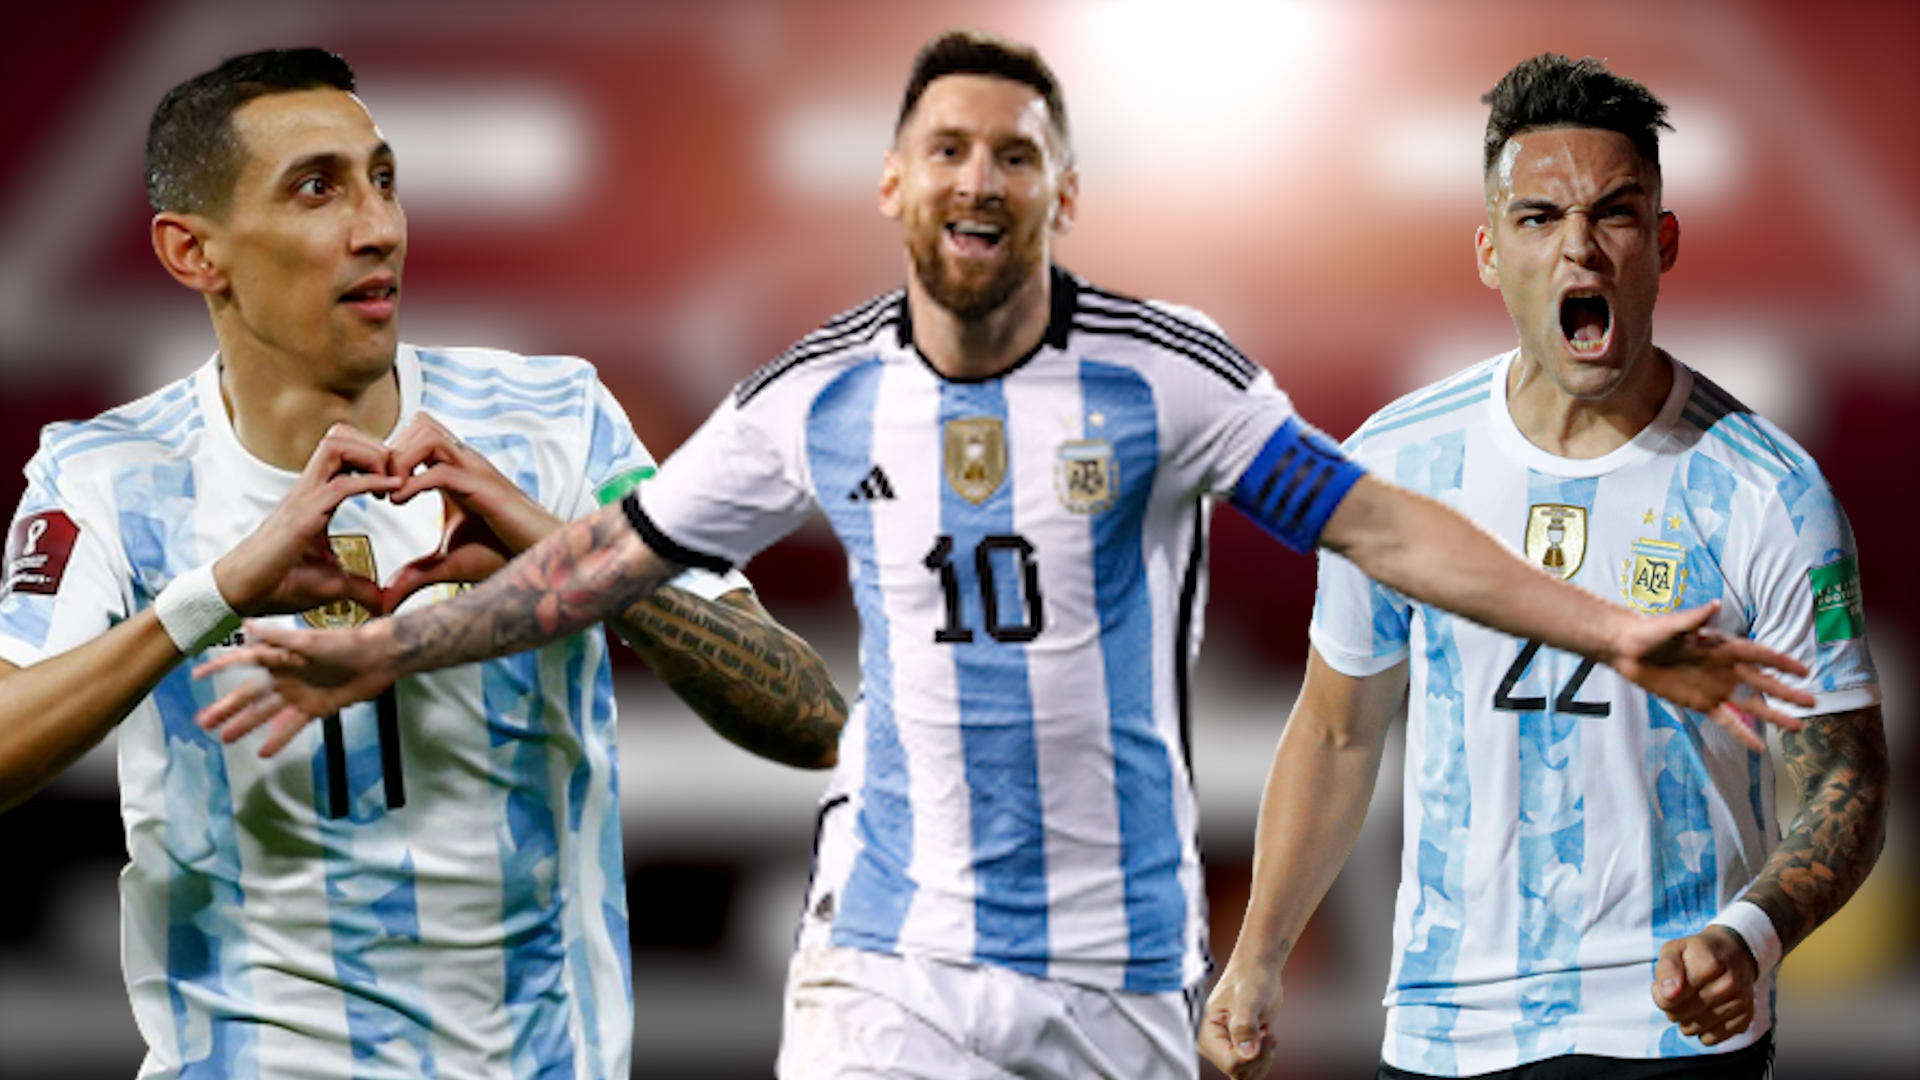 Argentina hiện tại: Argentina luôn là một đội tuyển bóng đá vô cùng ấn tượng với những cầu thủ tài năng. Hiện nay, họ đang rất tự tin và đầy khát khao để giành chiến thắng tại World Cup